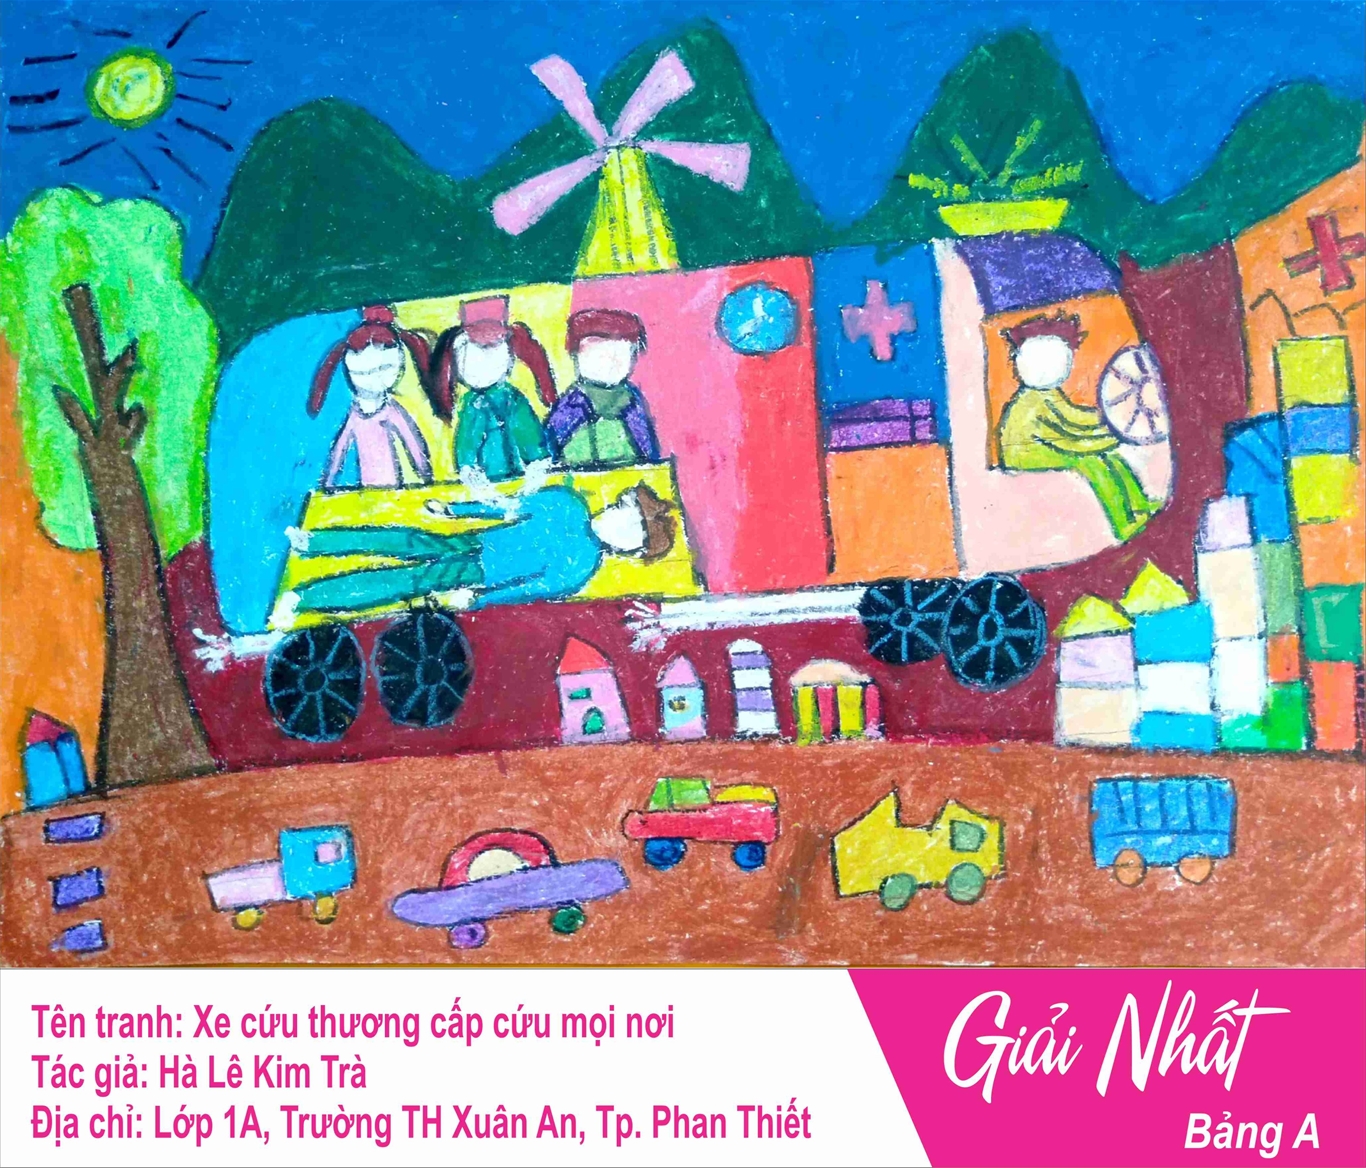 NTN Bình Thuận: Kết quả chung kết cuộc thi vẽ tranh “Nét cọ tuổi thơ” năm  2020